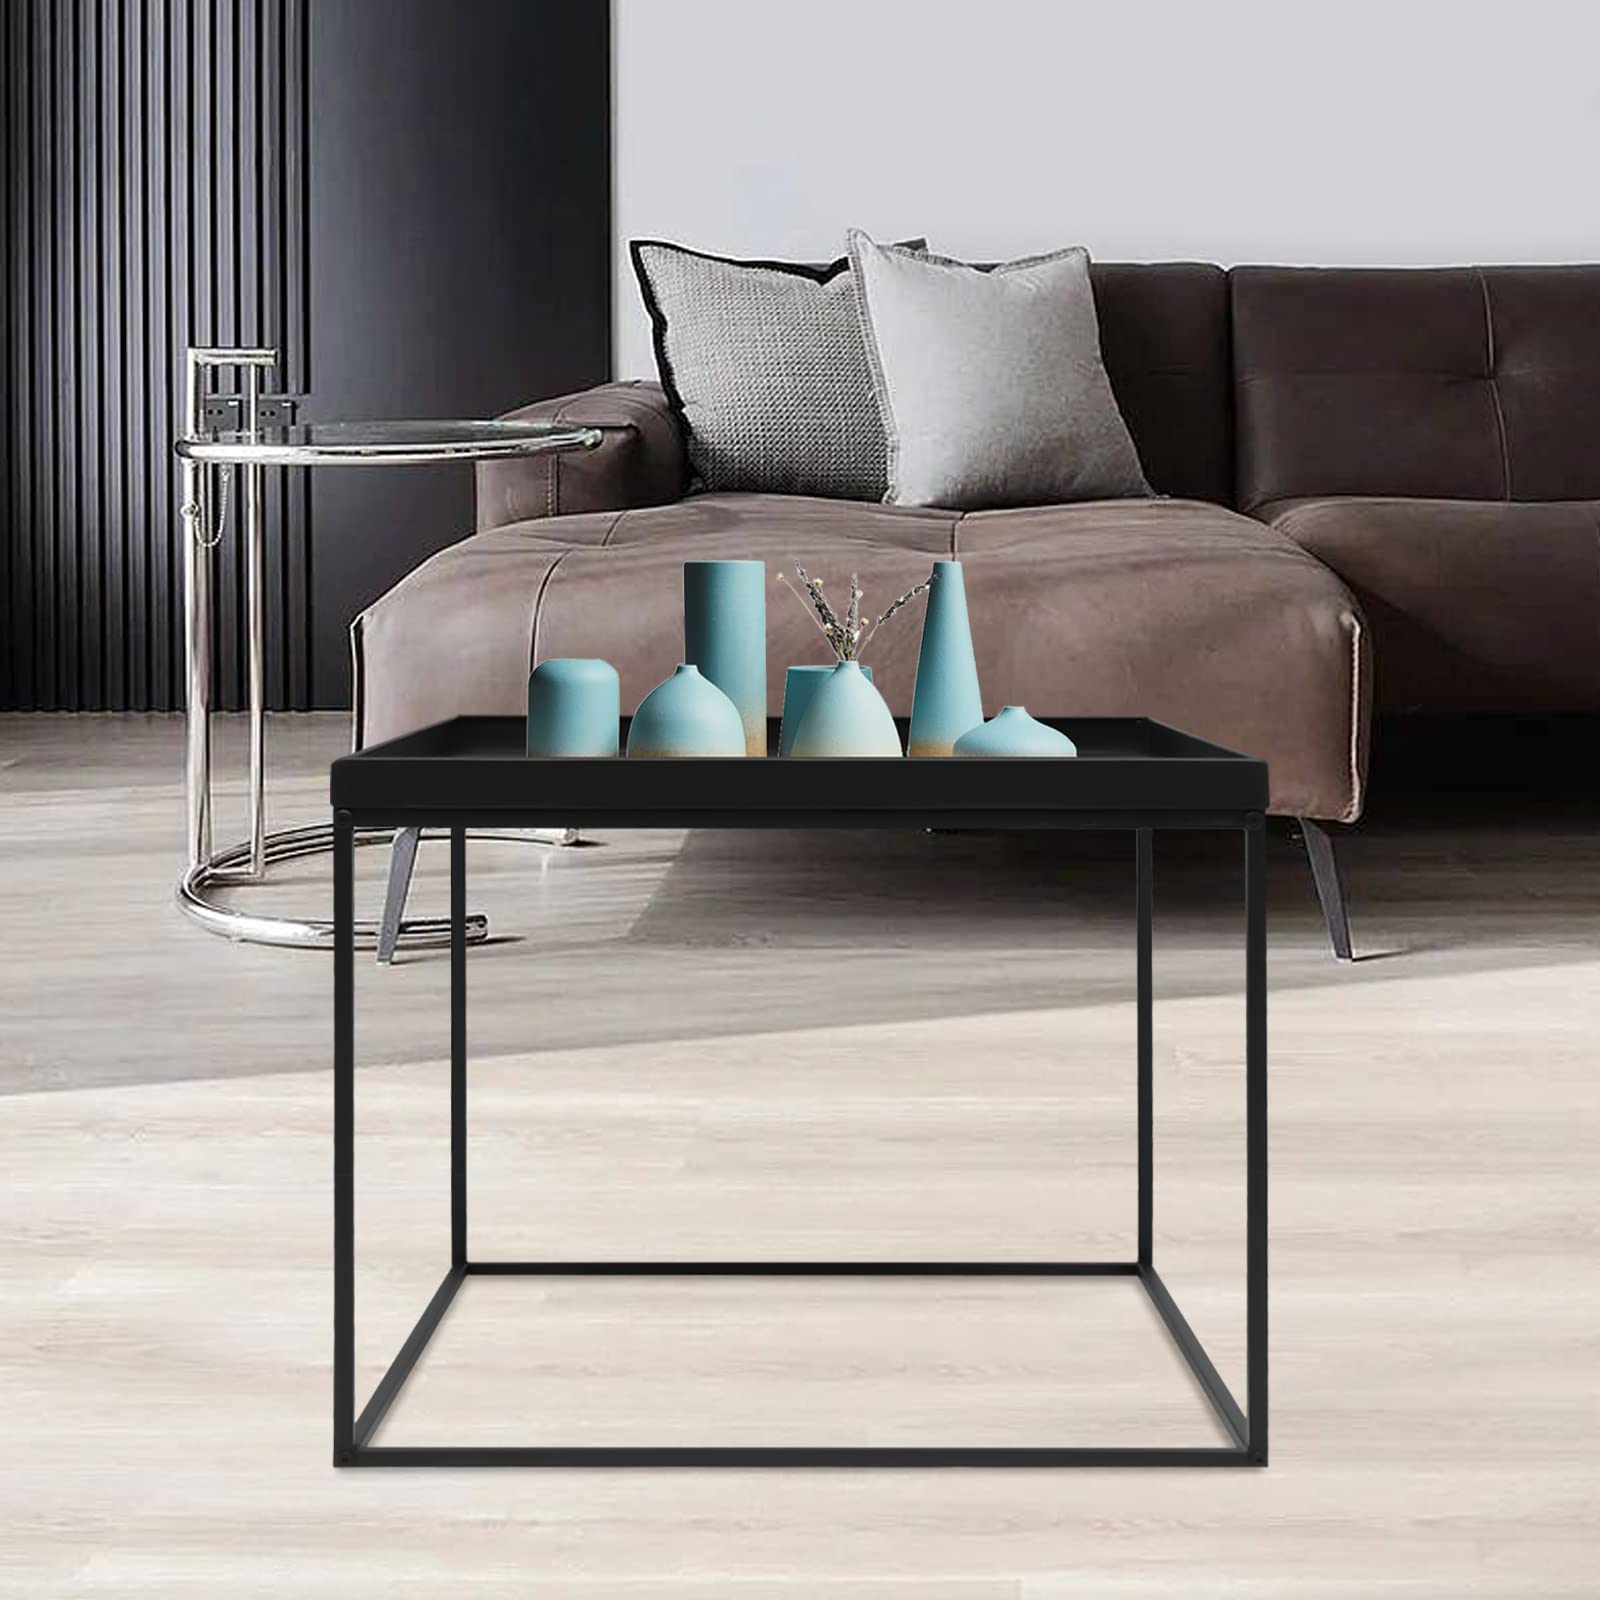 Table d'appoint carrée - Table basse mobile - Cadre en acier - Imperméable - Anti-rayures - Noir - Pour salon, chambre à coucher